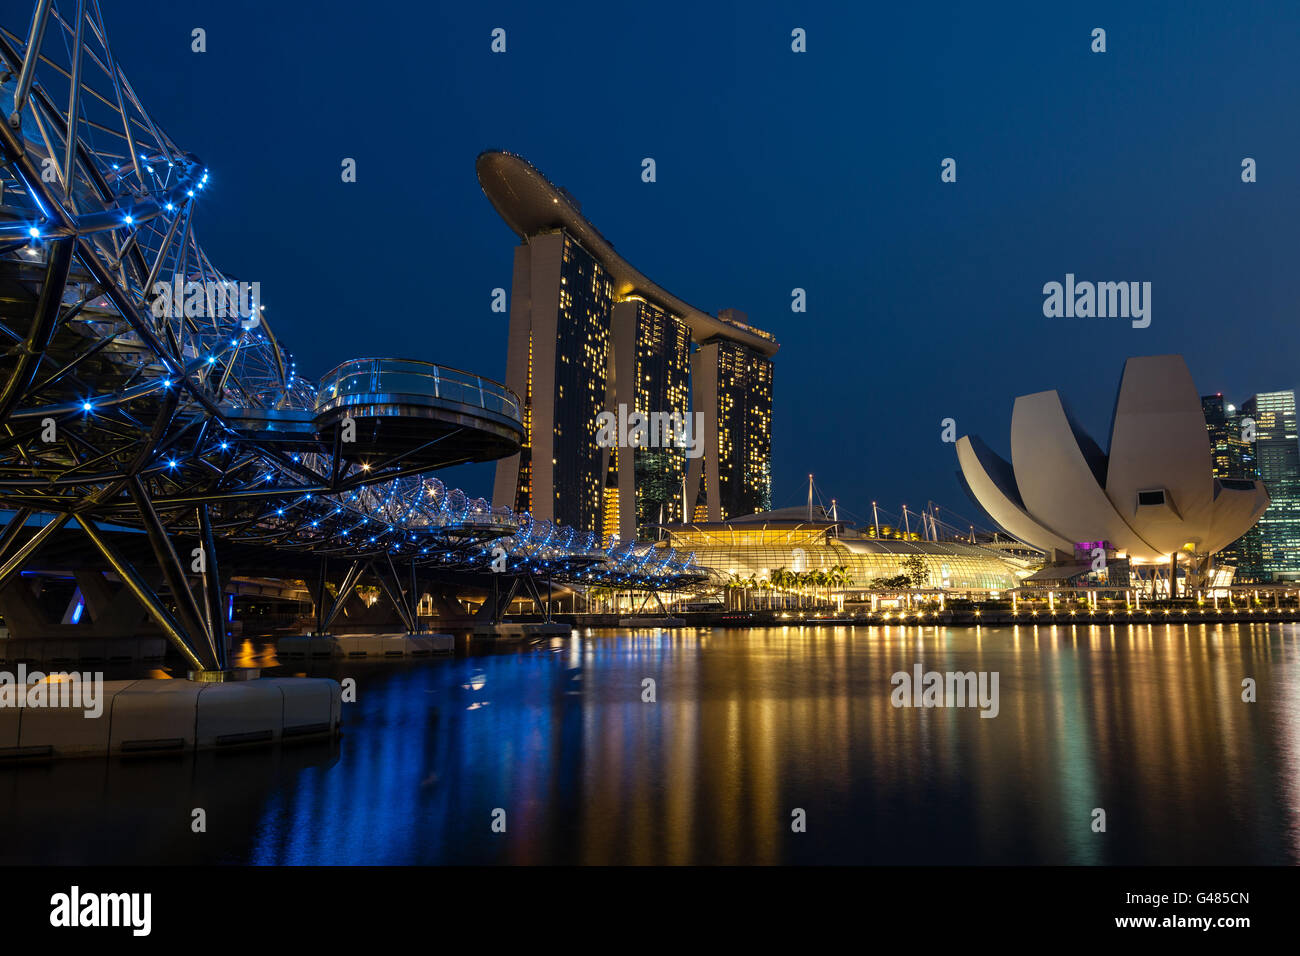 Helix Bridge leading to Singapore's Marina Bay Sands Hotel at the Marina Bay. Stock Photo